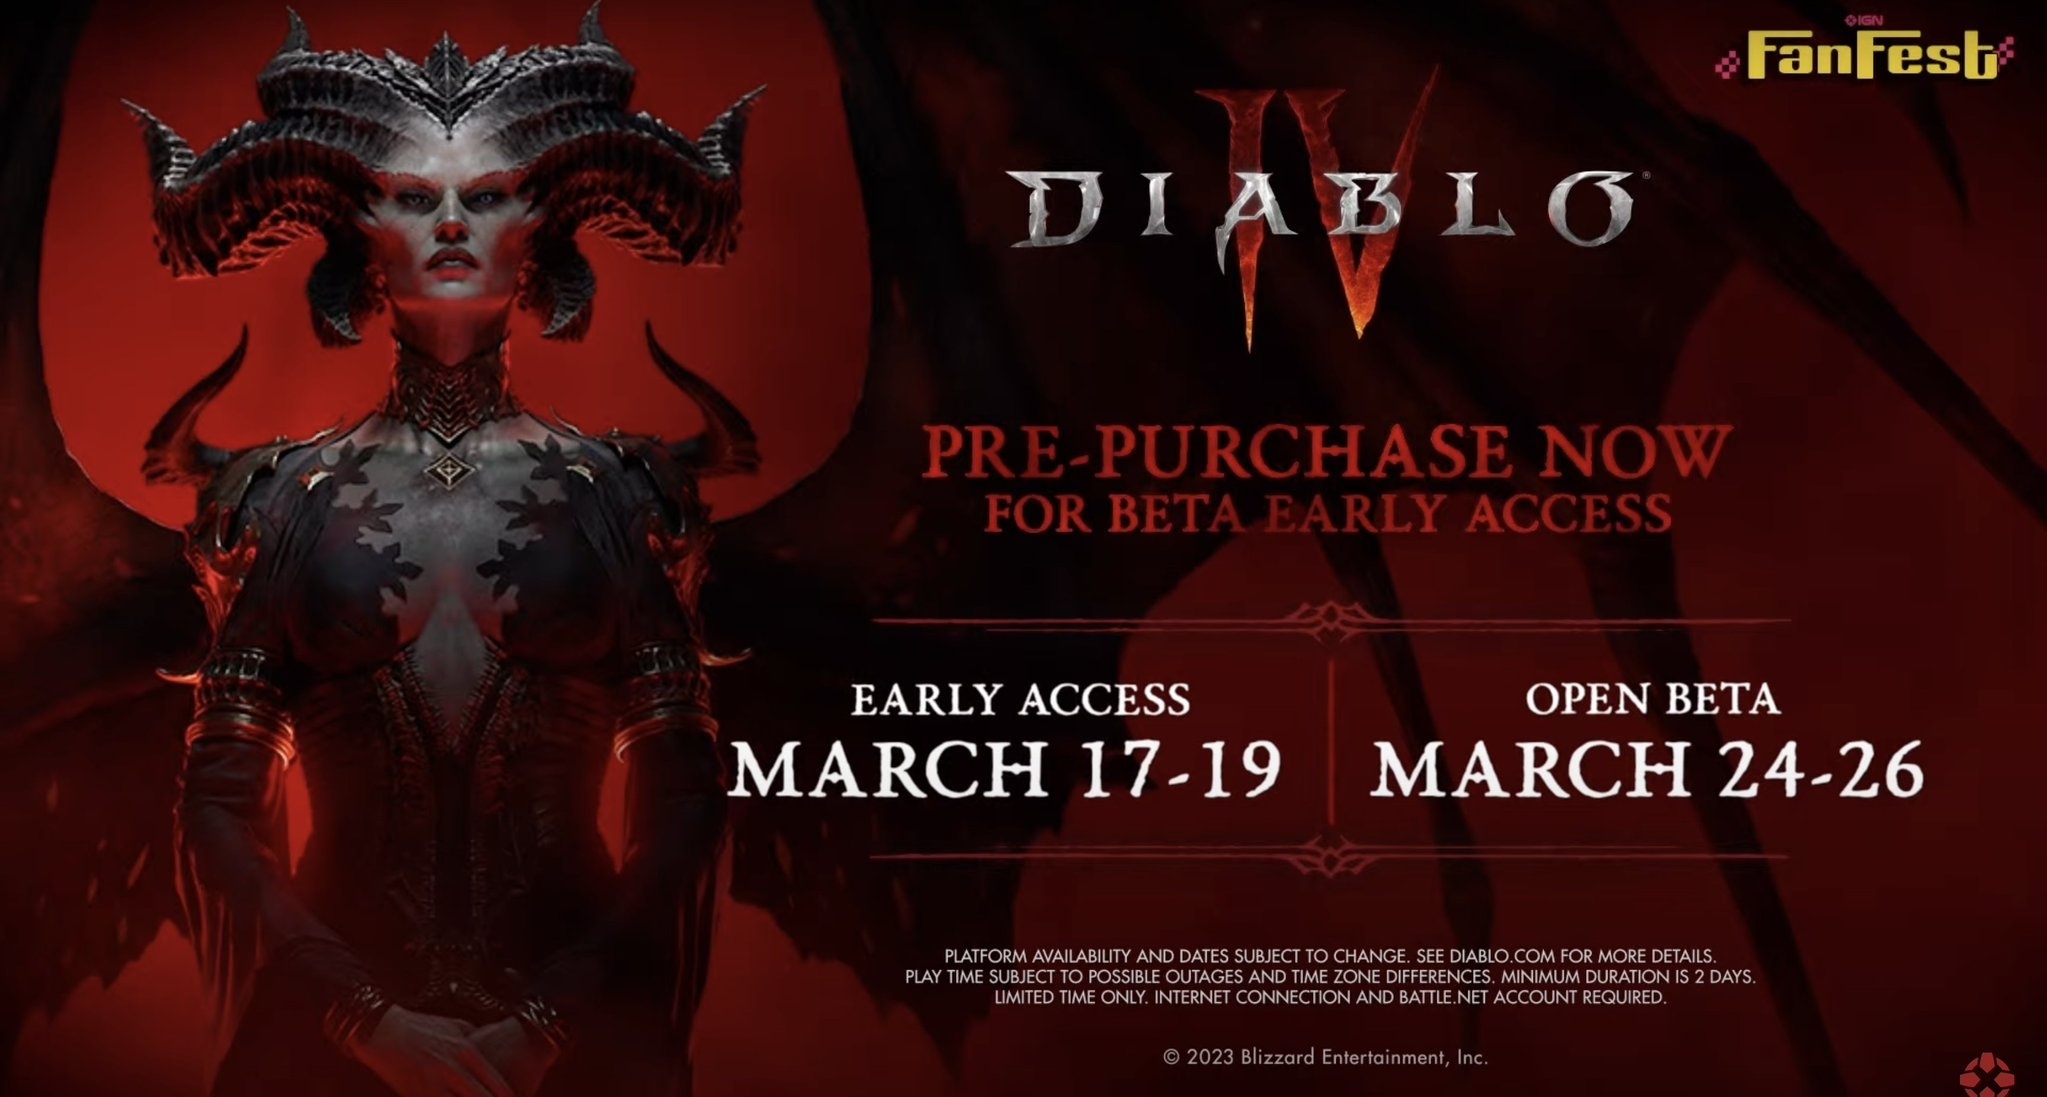 Baldur's Gate 3 ou Diablo IV: qual RPG escolher para jogar